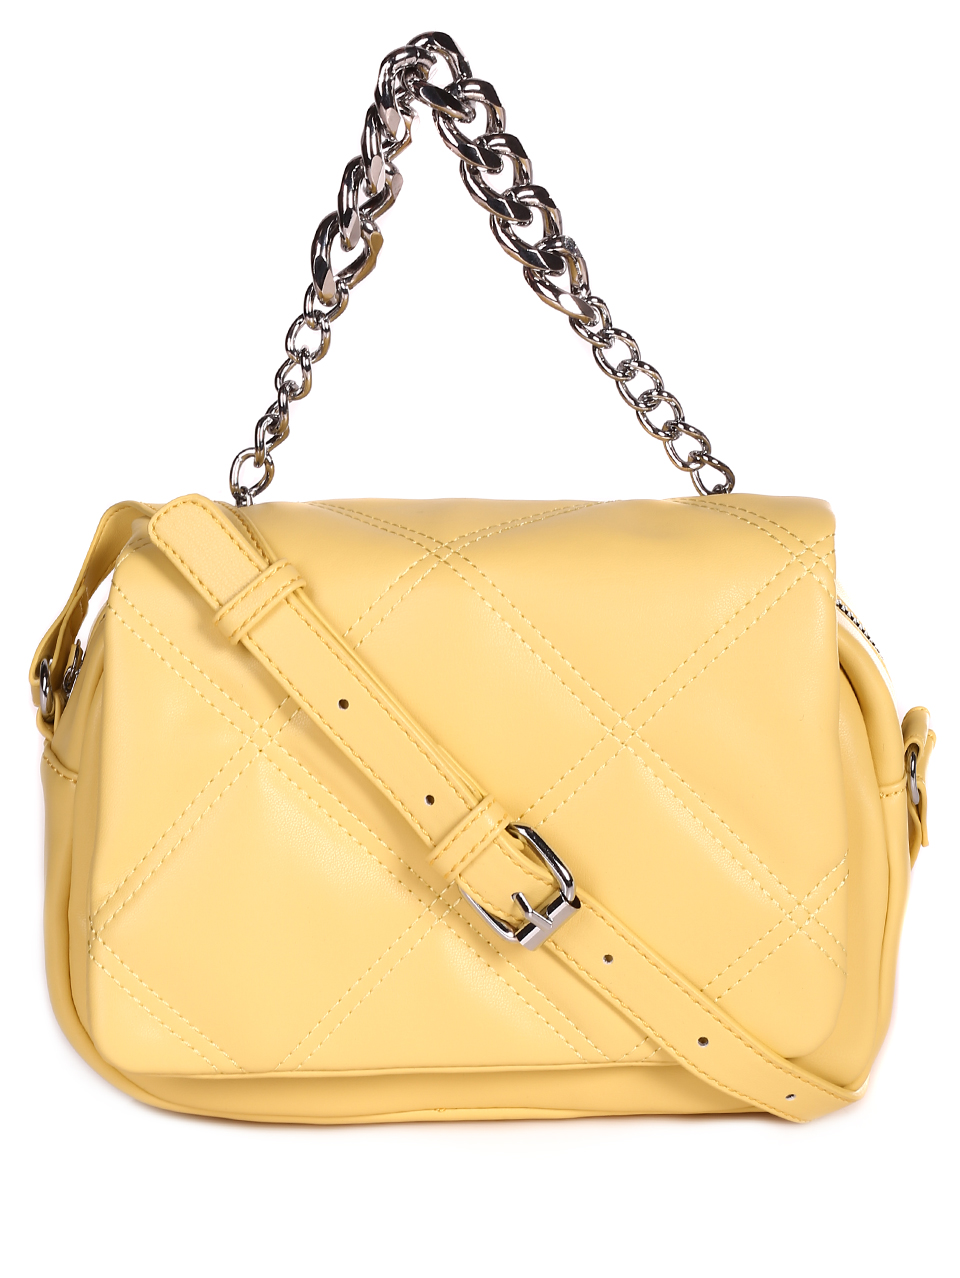 Дамска малка чанта в жълто 9Q-23067 yellow